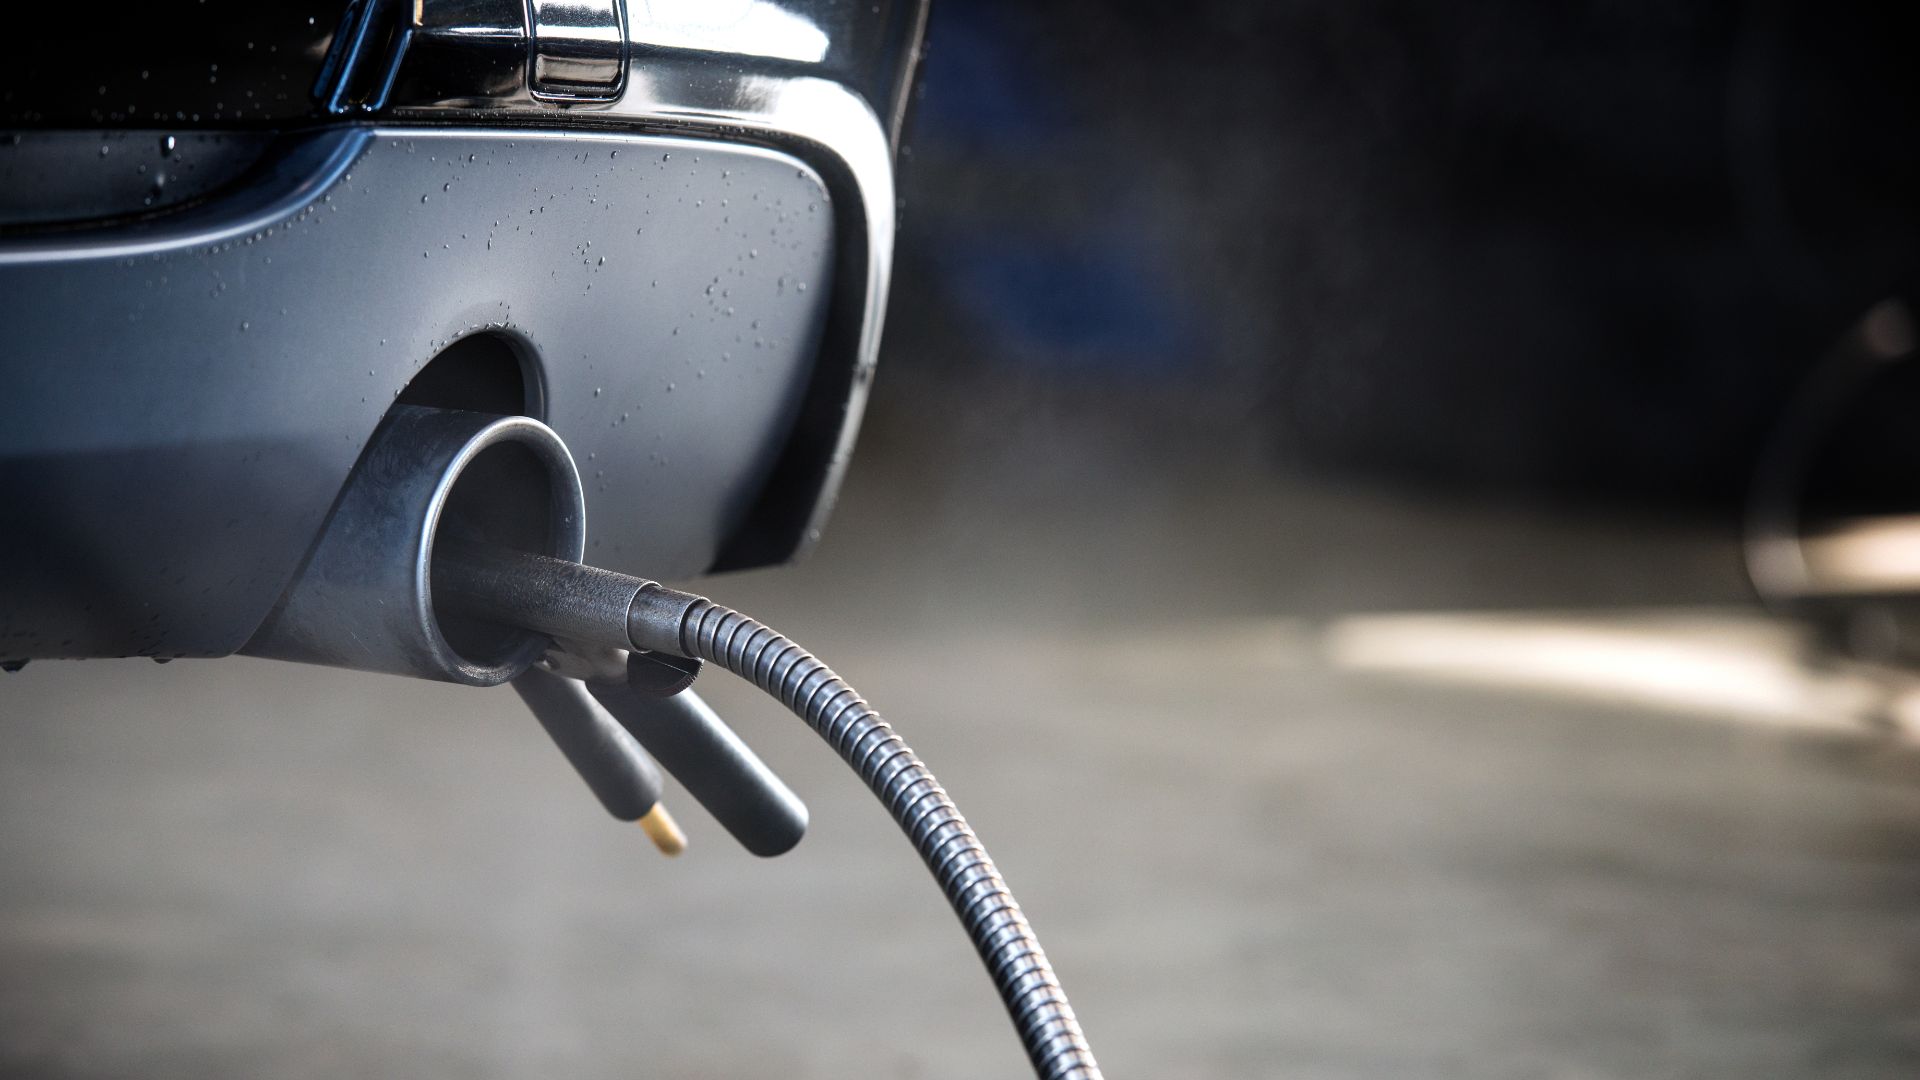 a close up of a car's fuel pump.